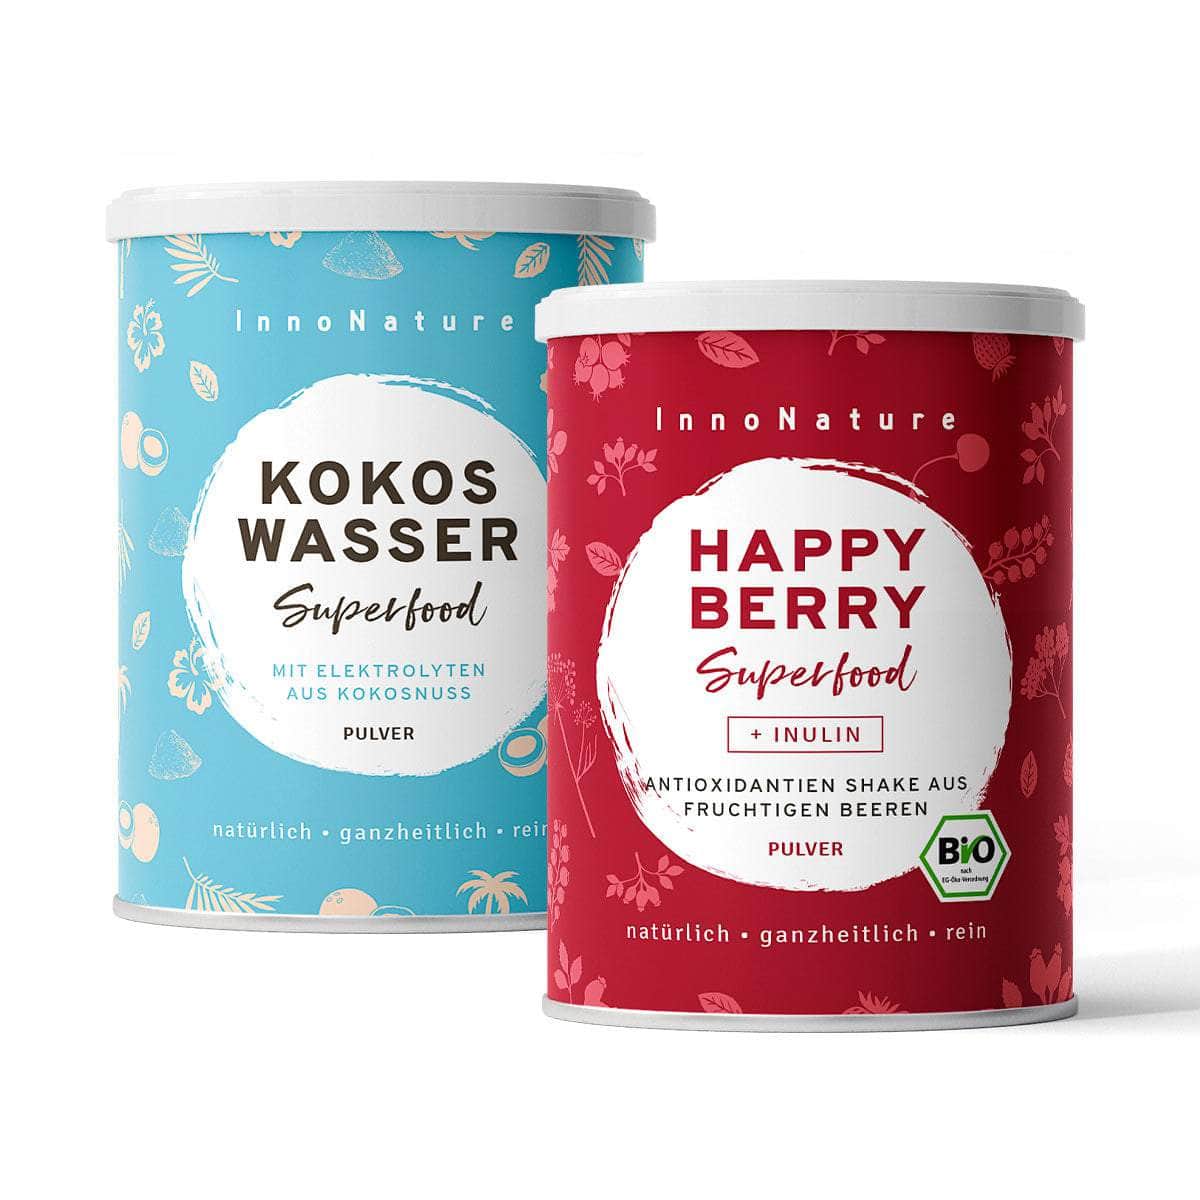 InnoNature Pakete 1x Vorrat (1x Happy Berry, 1x Kokoswasser) Happy-Summer-Set: Happy Berry und Kokoswasser